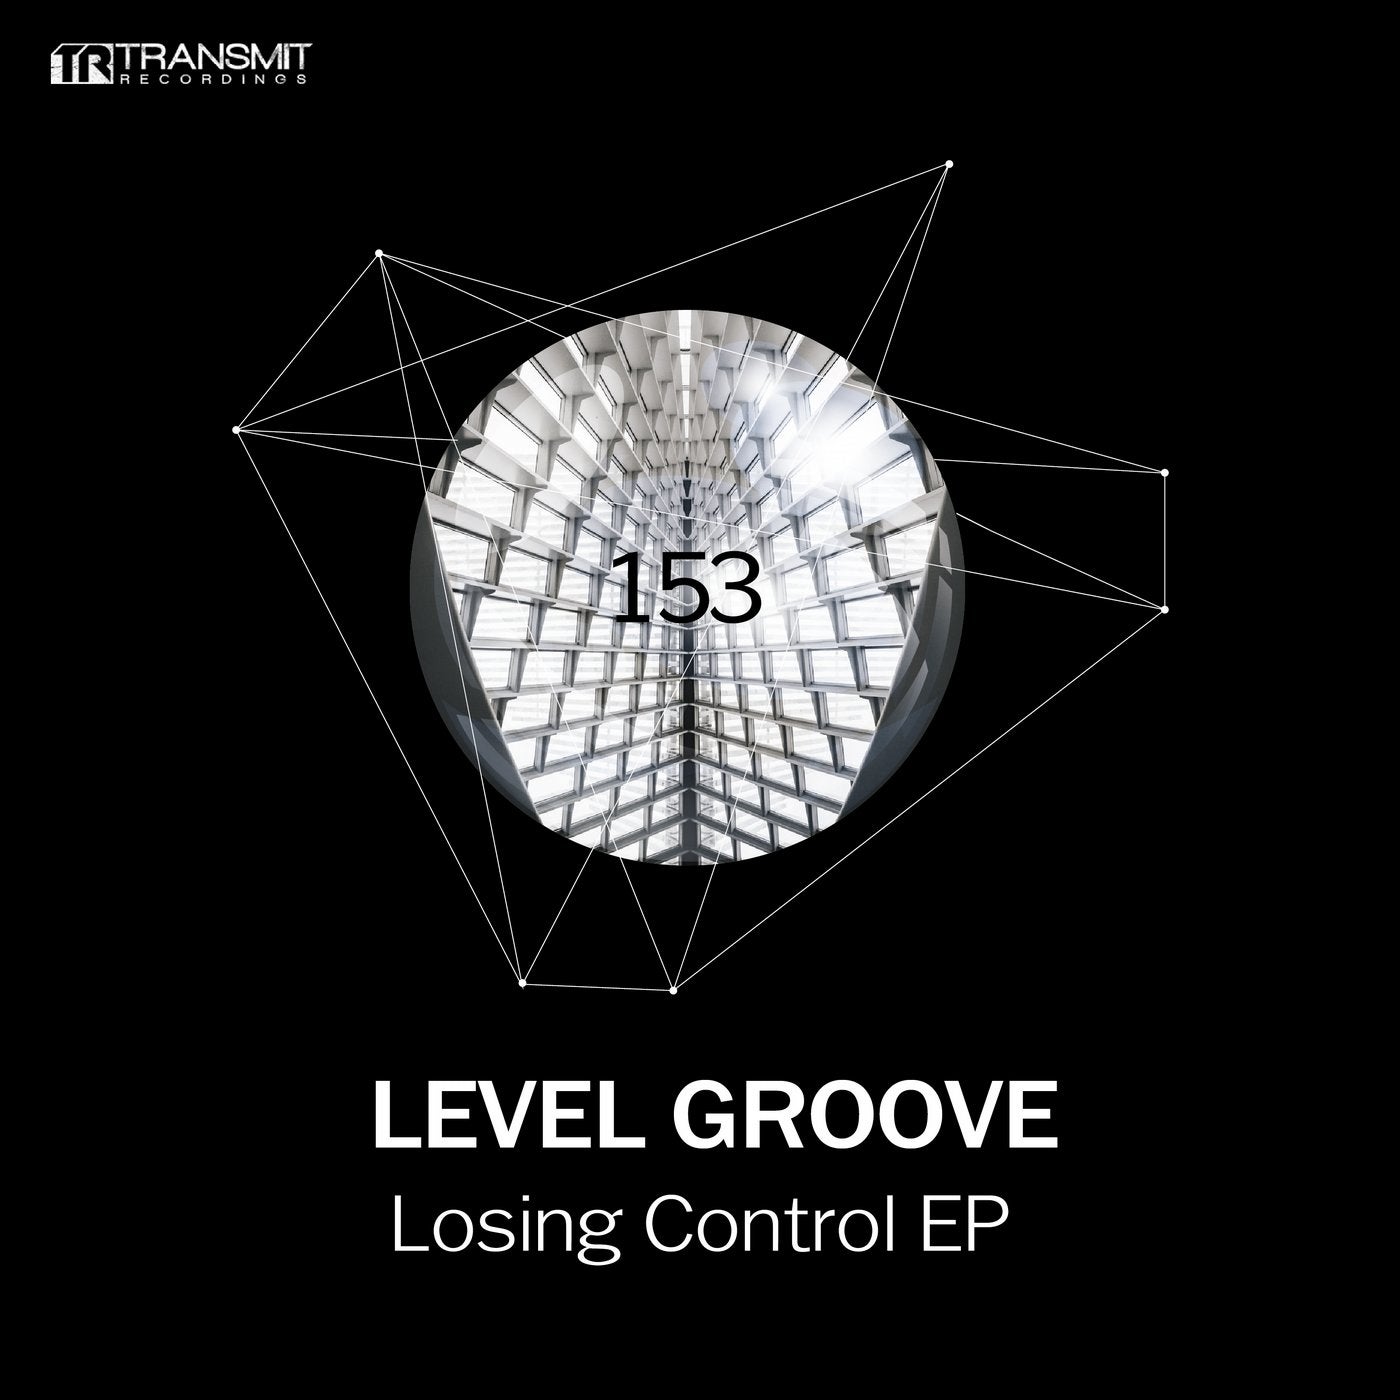 Losing Control EP